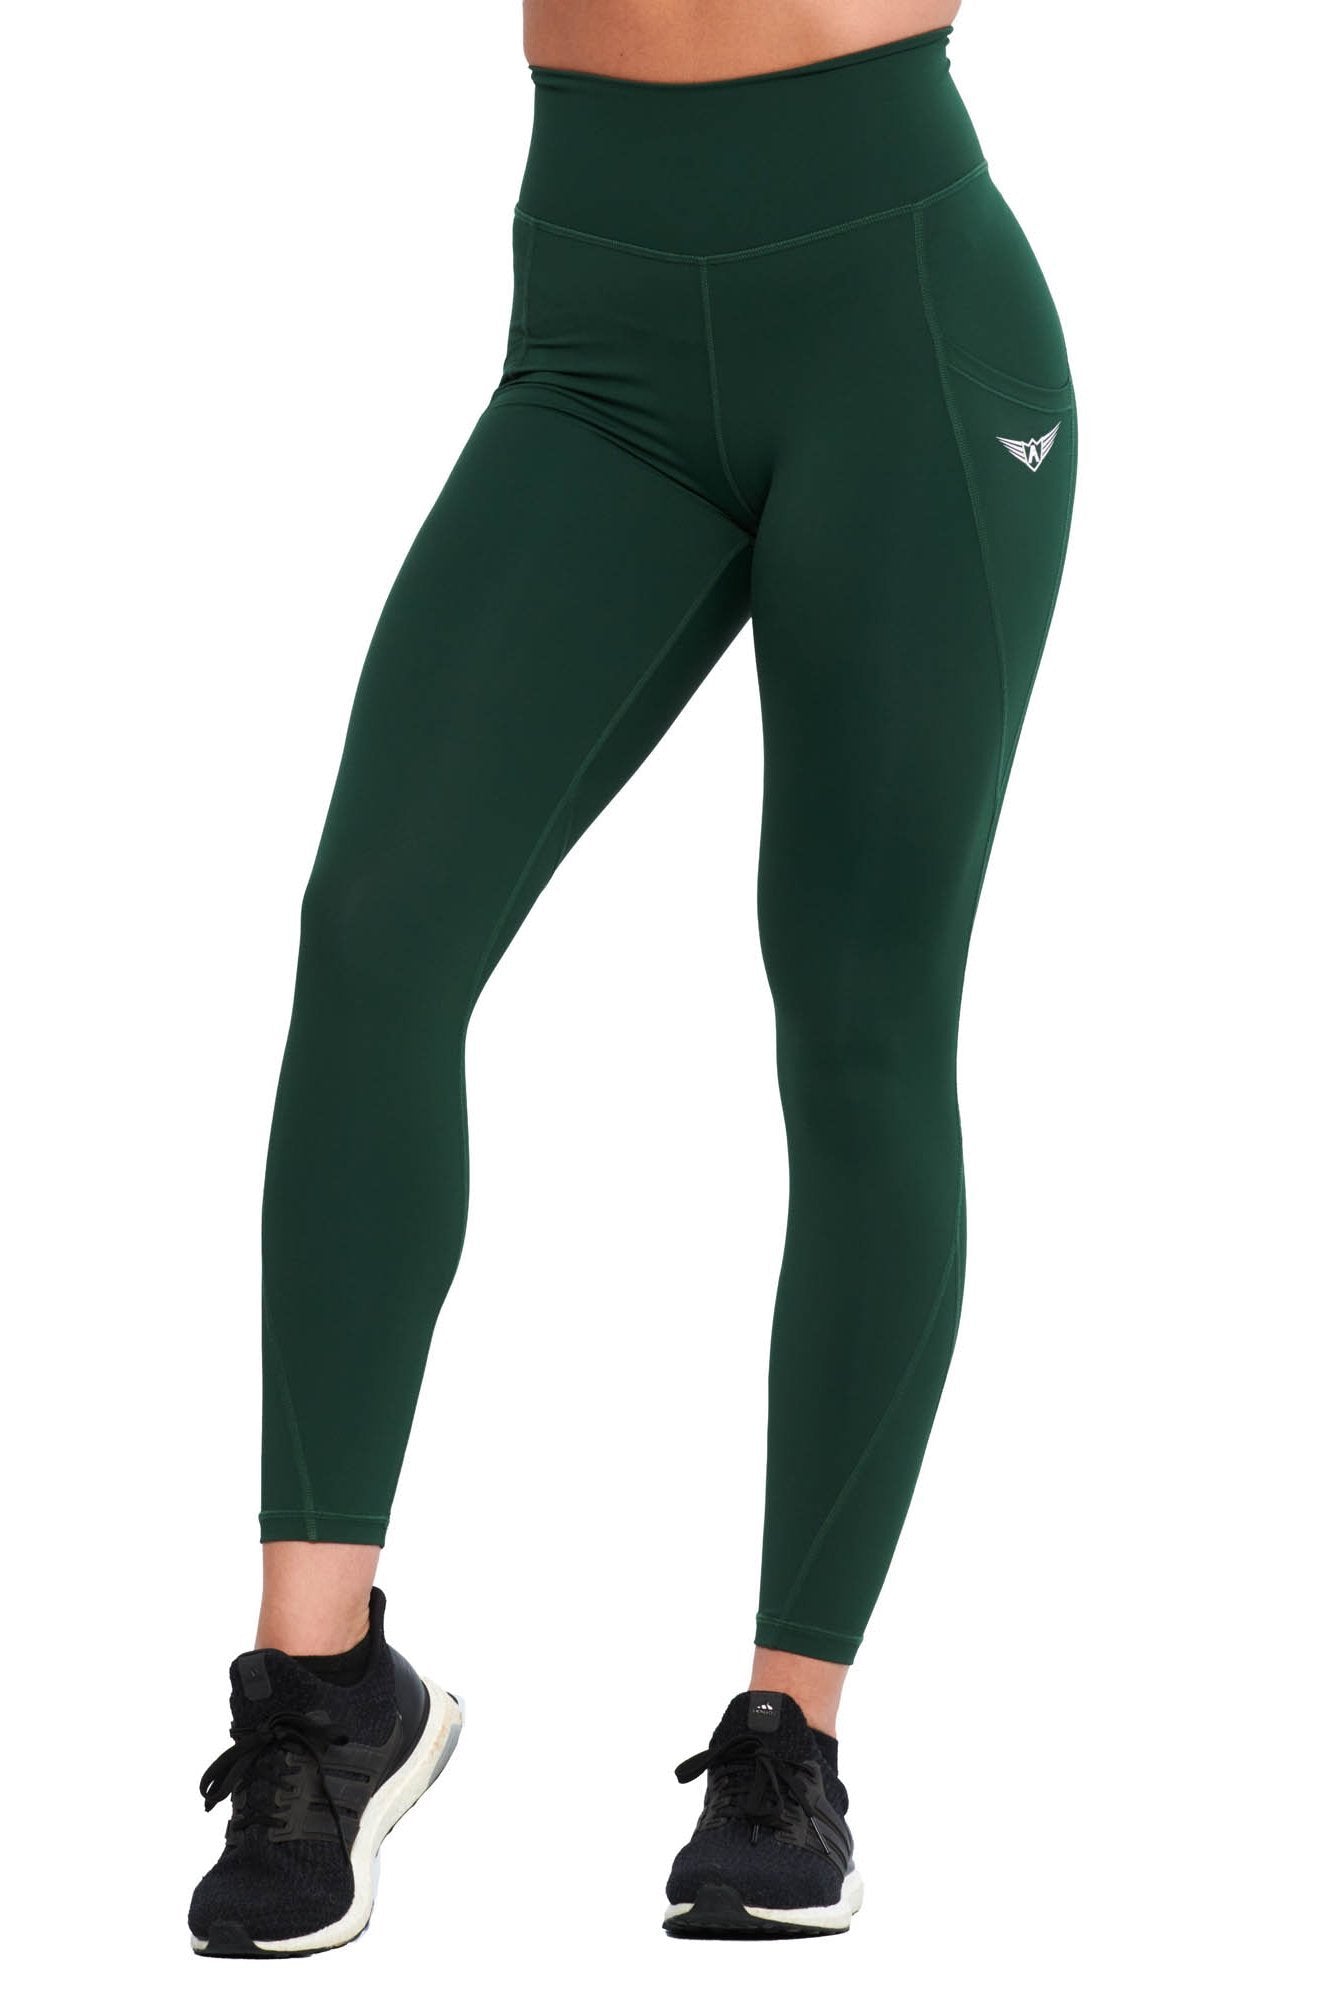 green workout pants